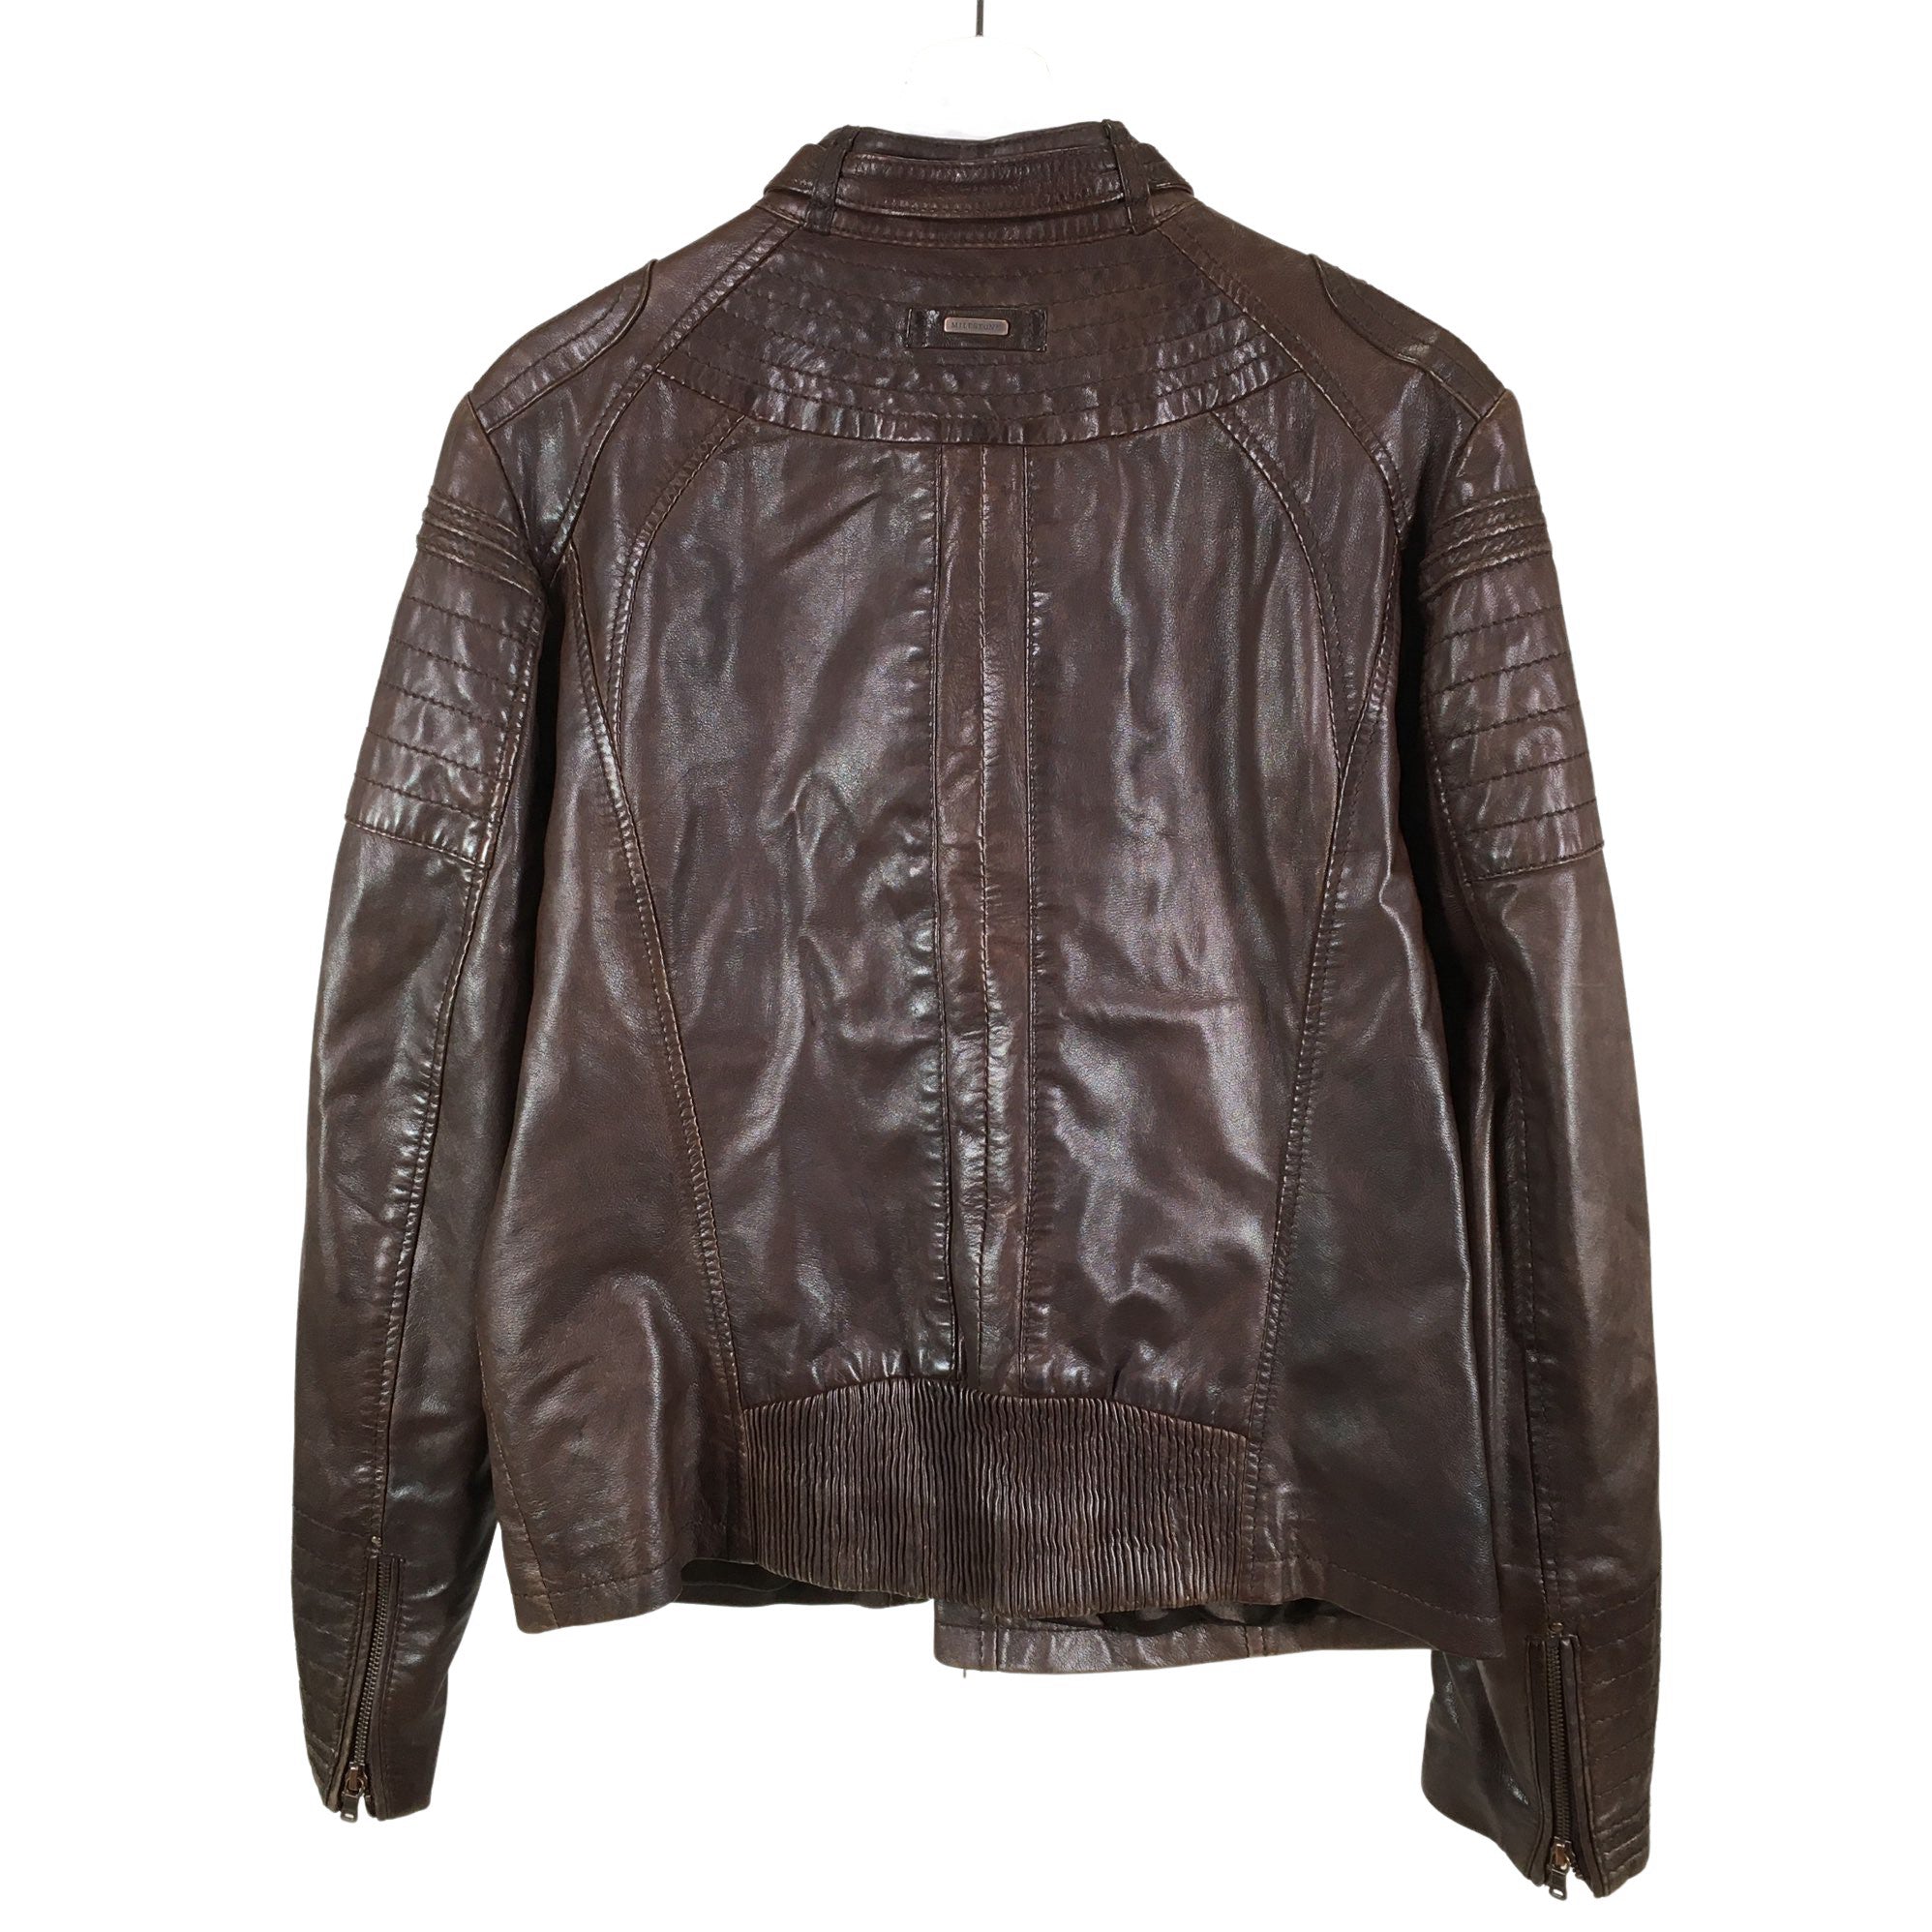 Milestone Lamb Leather Jacket Coat Black Leather Size 52/L | eBay